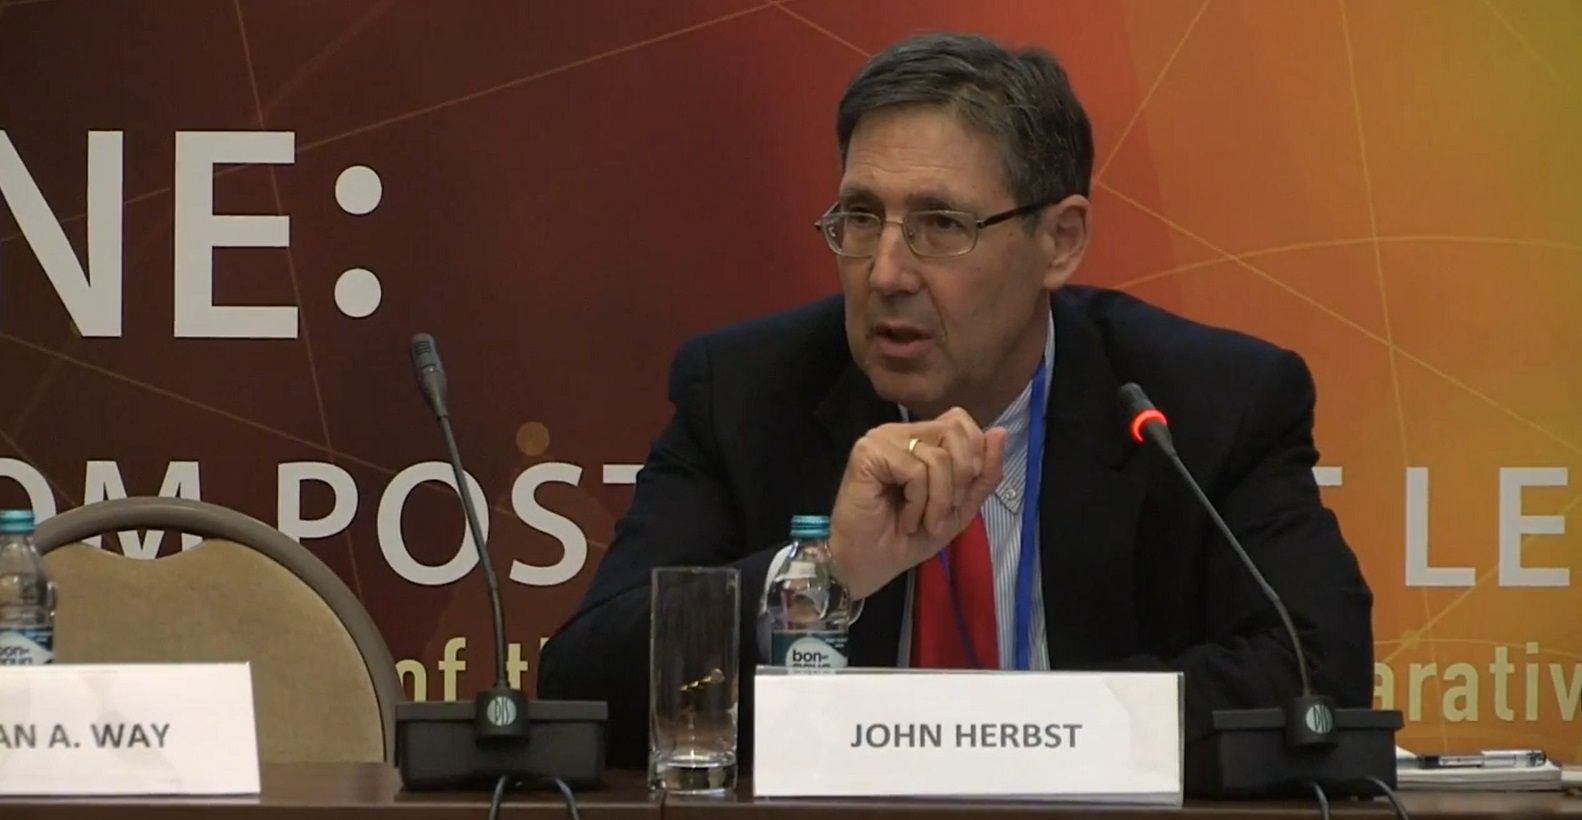 Речь Джона Хербста: Это не Россия Против Запада, это Реакция Против Будущего